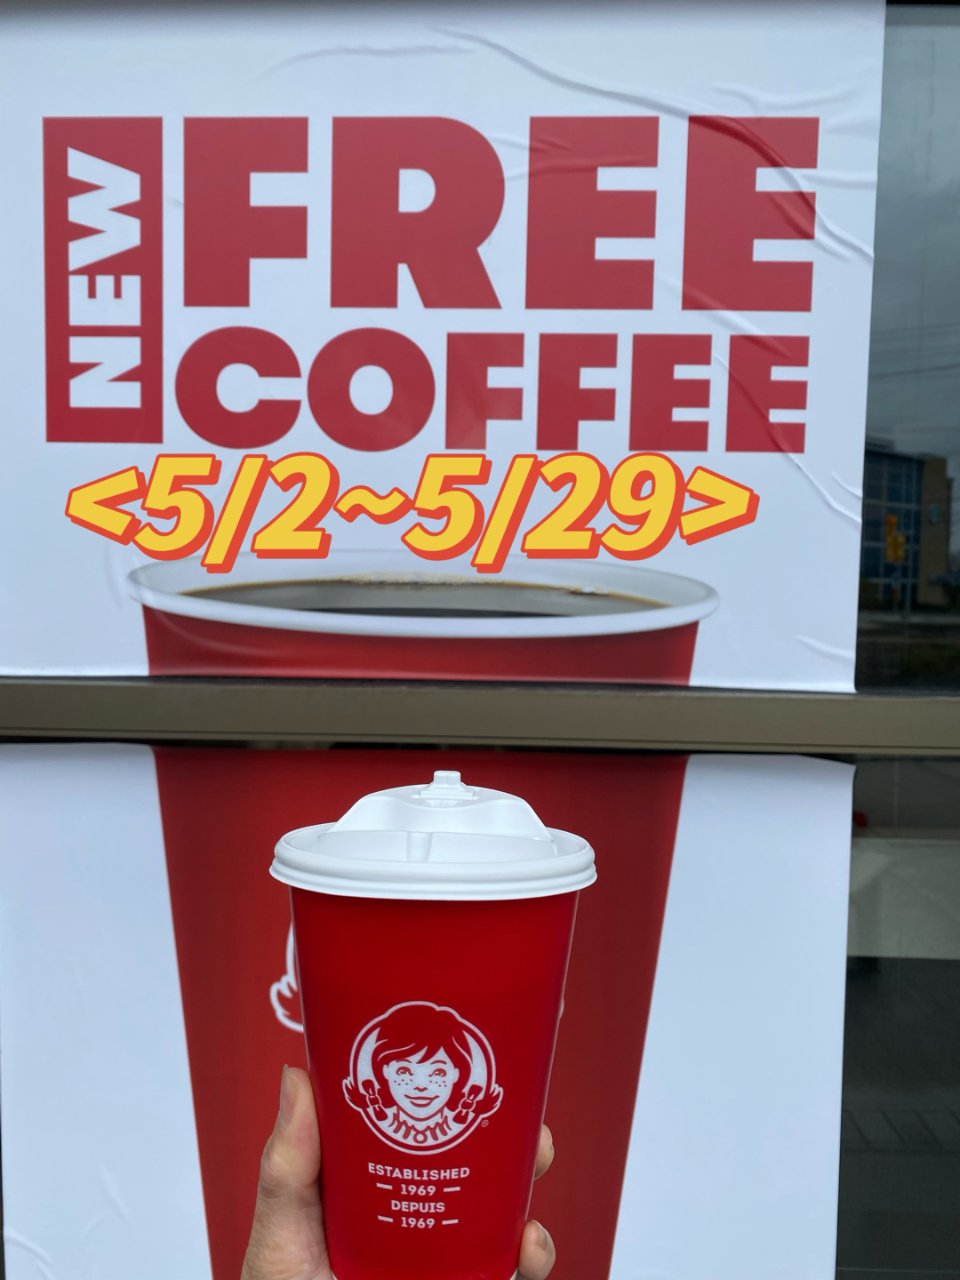 加拿大Wendy's 免費咖啡...